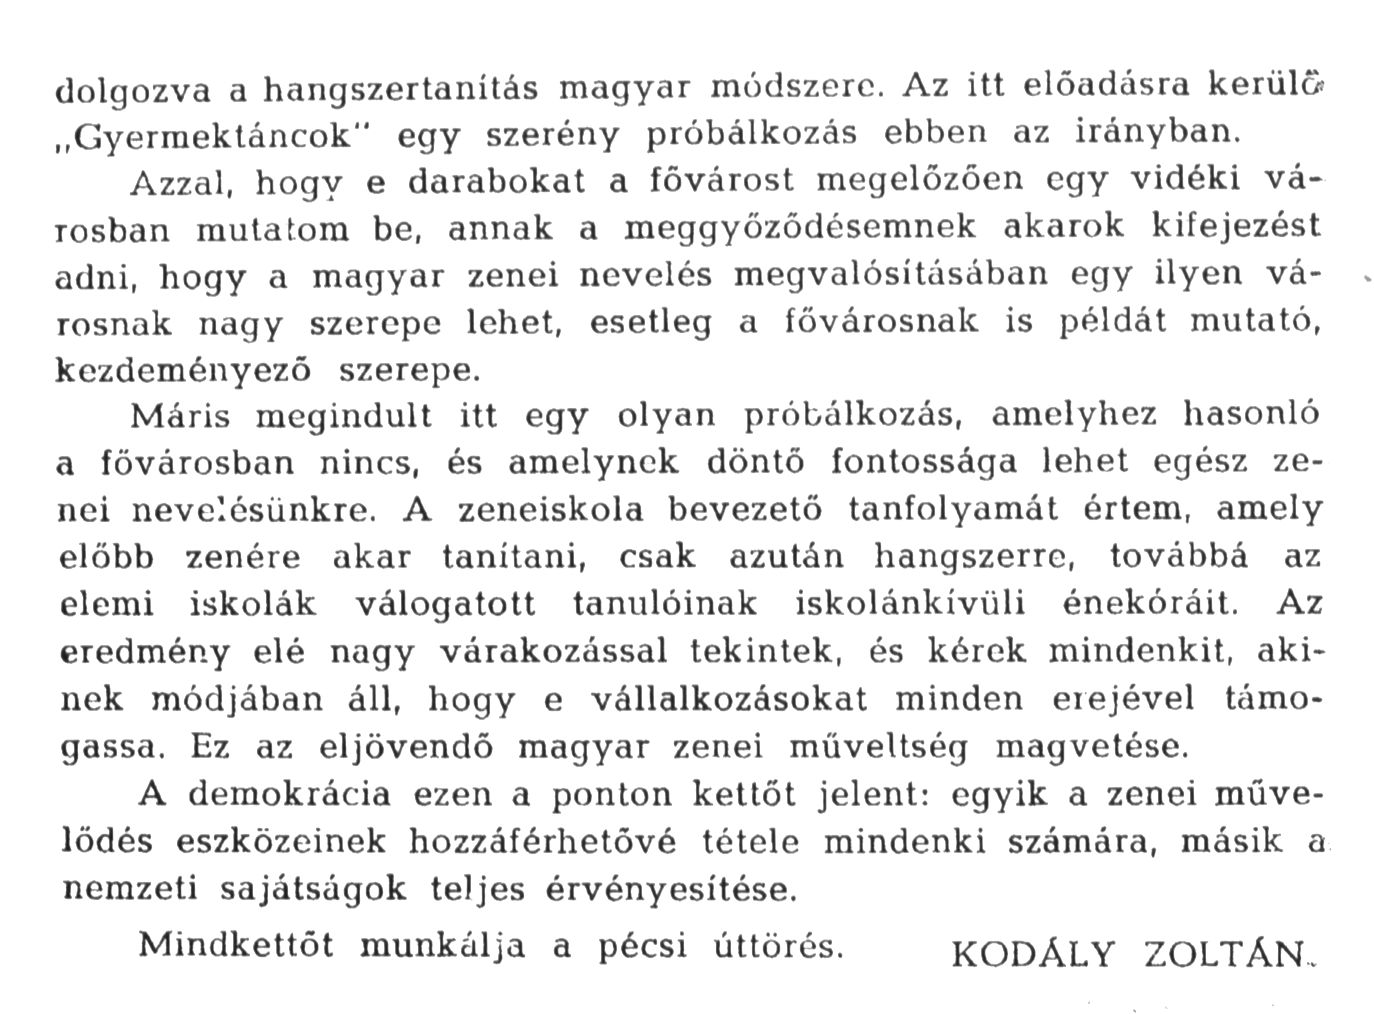 Részlet Kodály Zoltán pécsi beszédéből